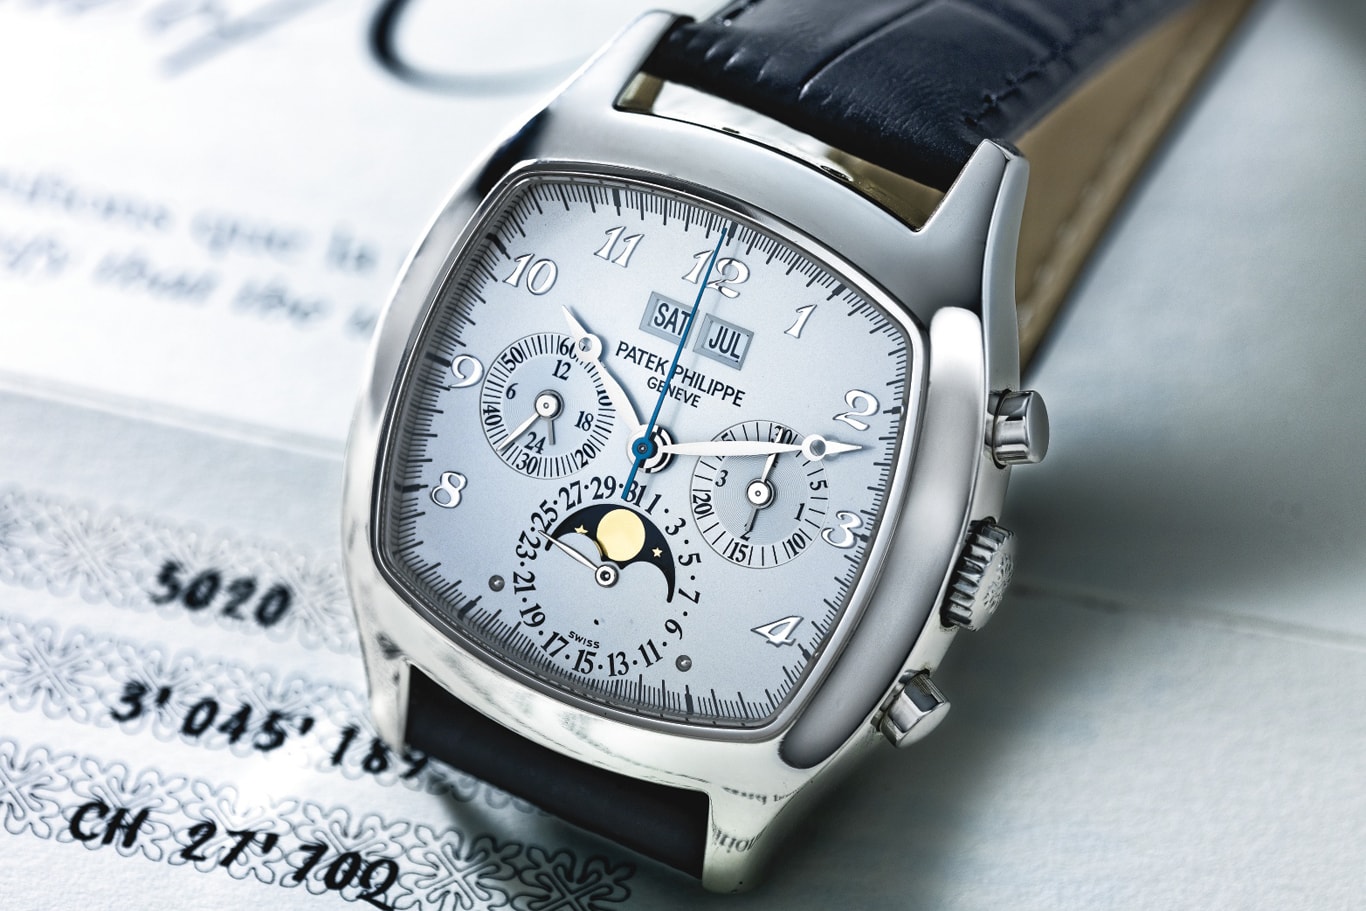 Bạn có thích dáng vỏ “Tivi” của đồng hồ Patek Philippe lịch vạn niên mã hiệu 5020?